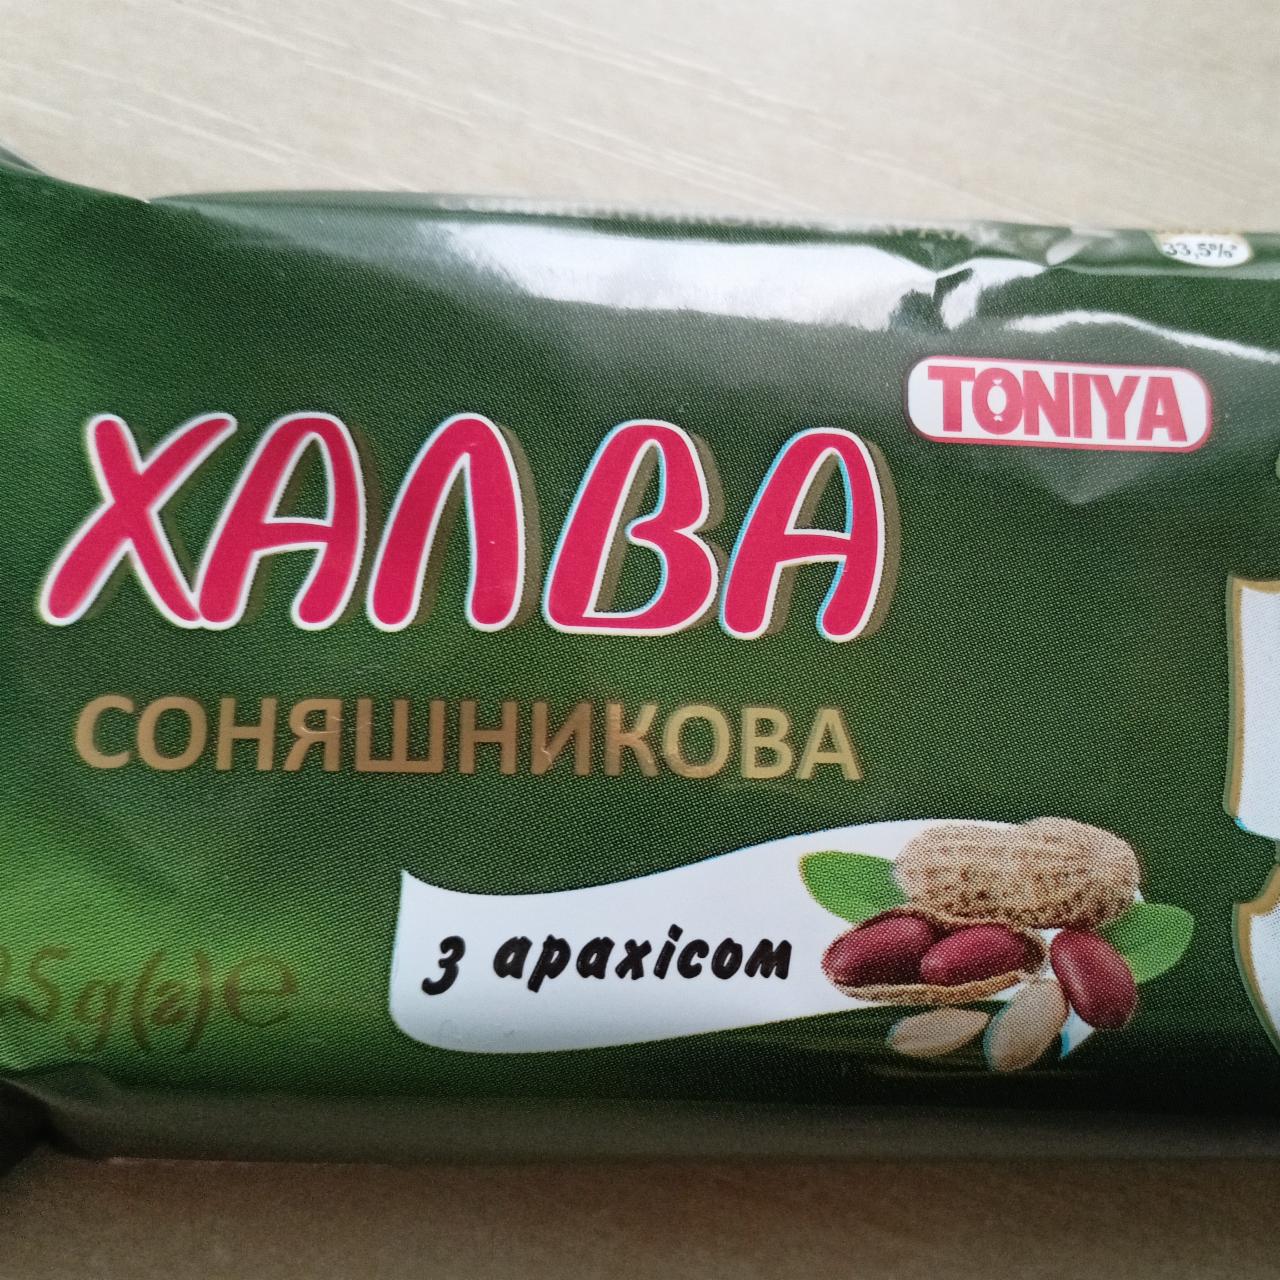 Фото - Халва подсолнечная с арахисом Toniya